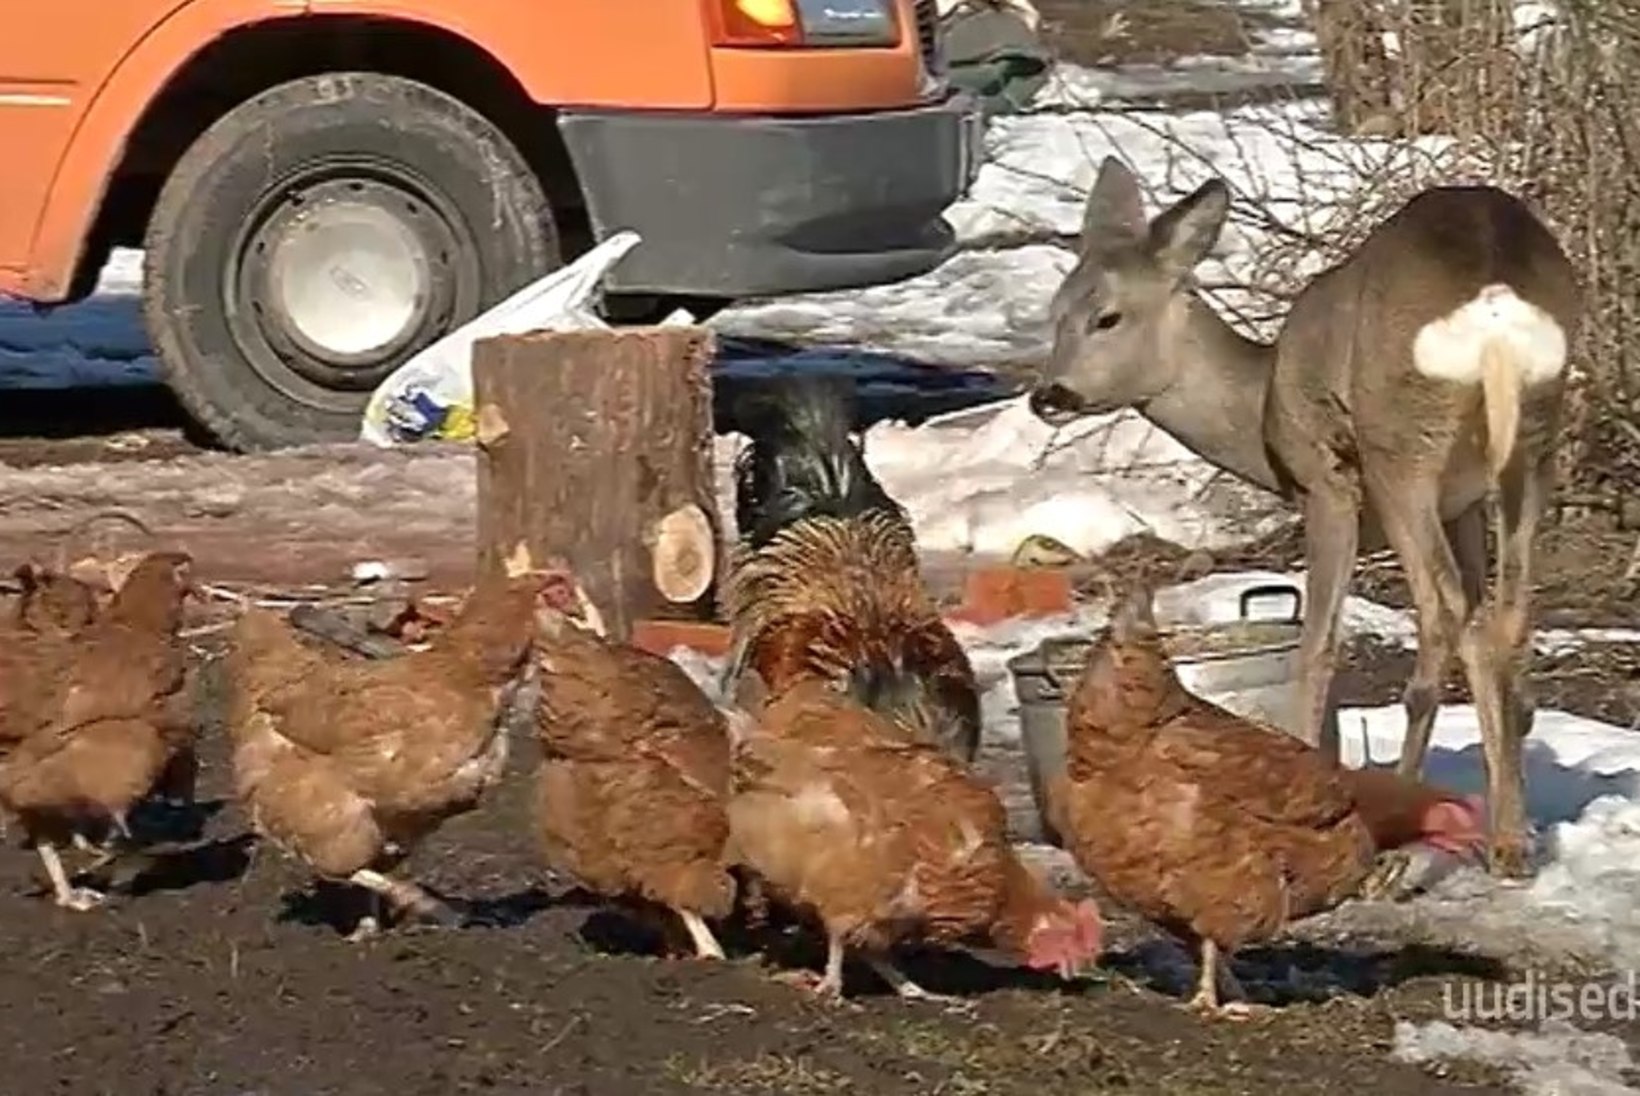 TV3 VIDEO | Uskumatu lugu! Viljandimaa pere juures elab metskits: käib koerakuudis magamas ja sööb koos kanadega